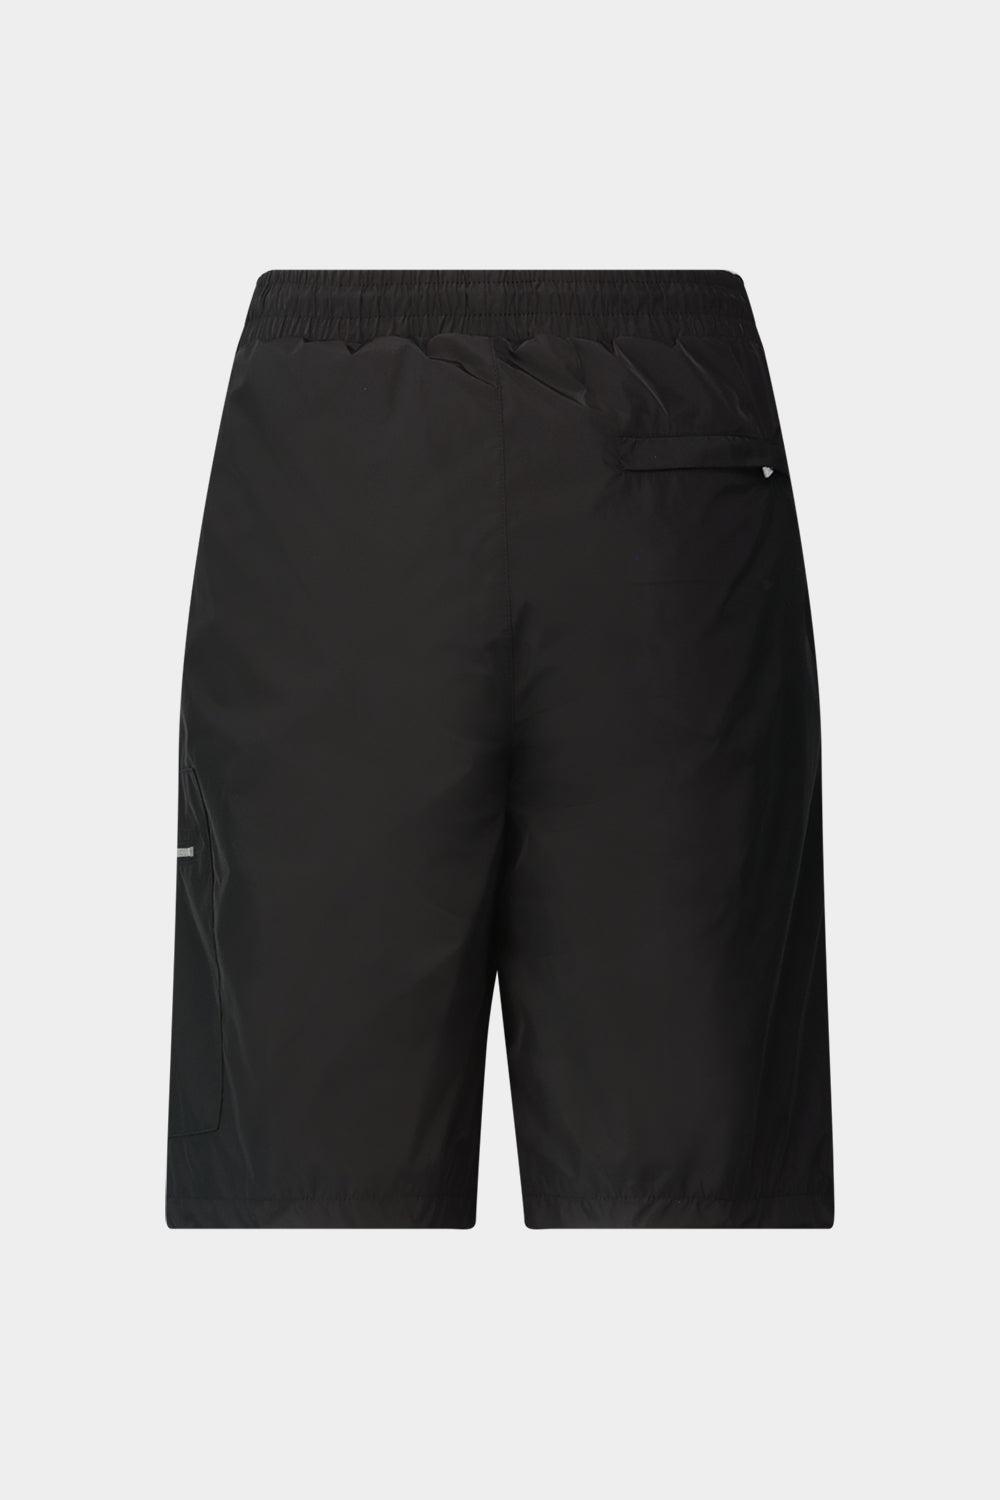 מכנסיים קצרים לגברים לוגו KARL LAGERFELD Vendome online | ונדום .